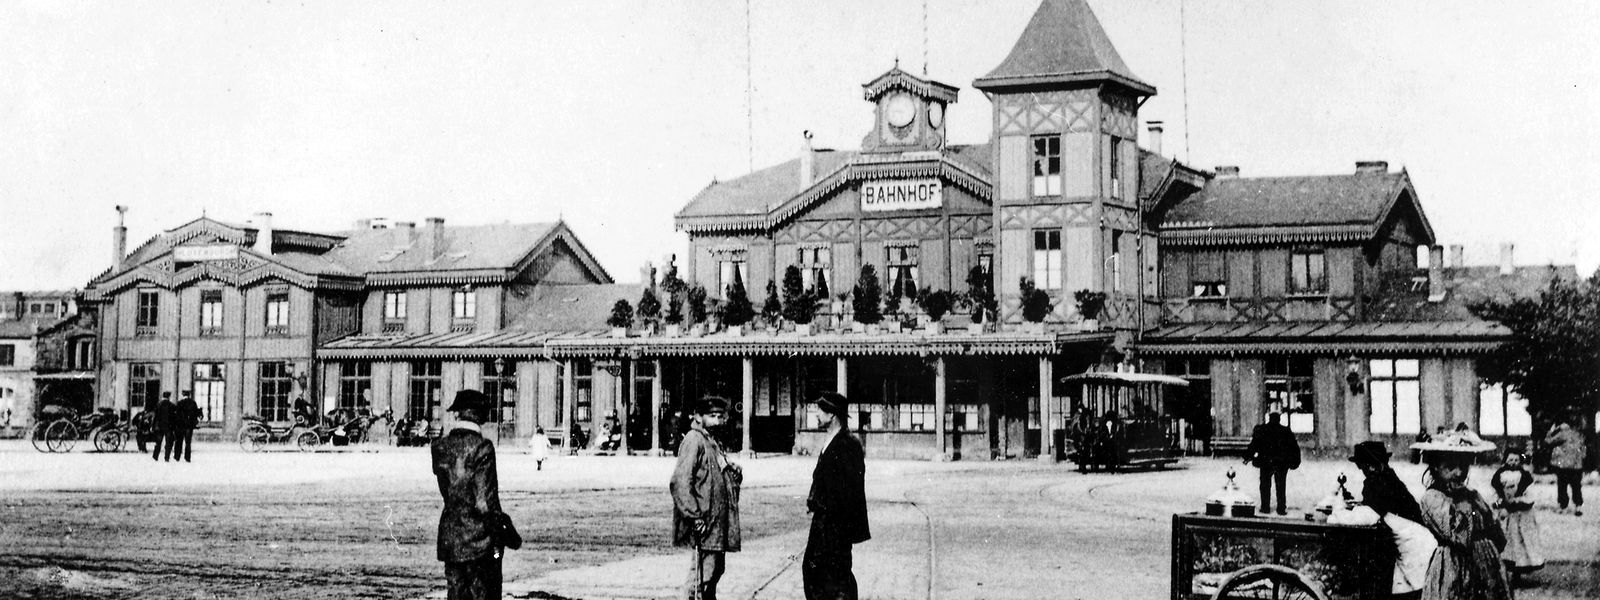 Das Bahnhofsgebäude von 1859 bestand noch gänzlich aus Holz.